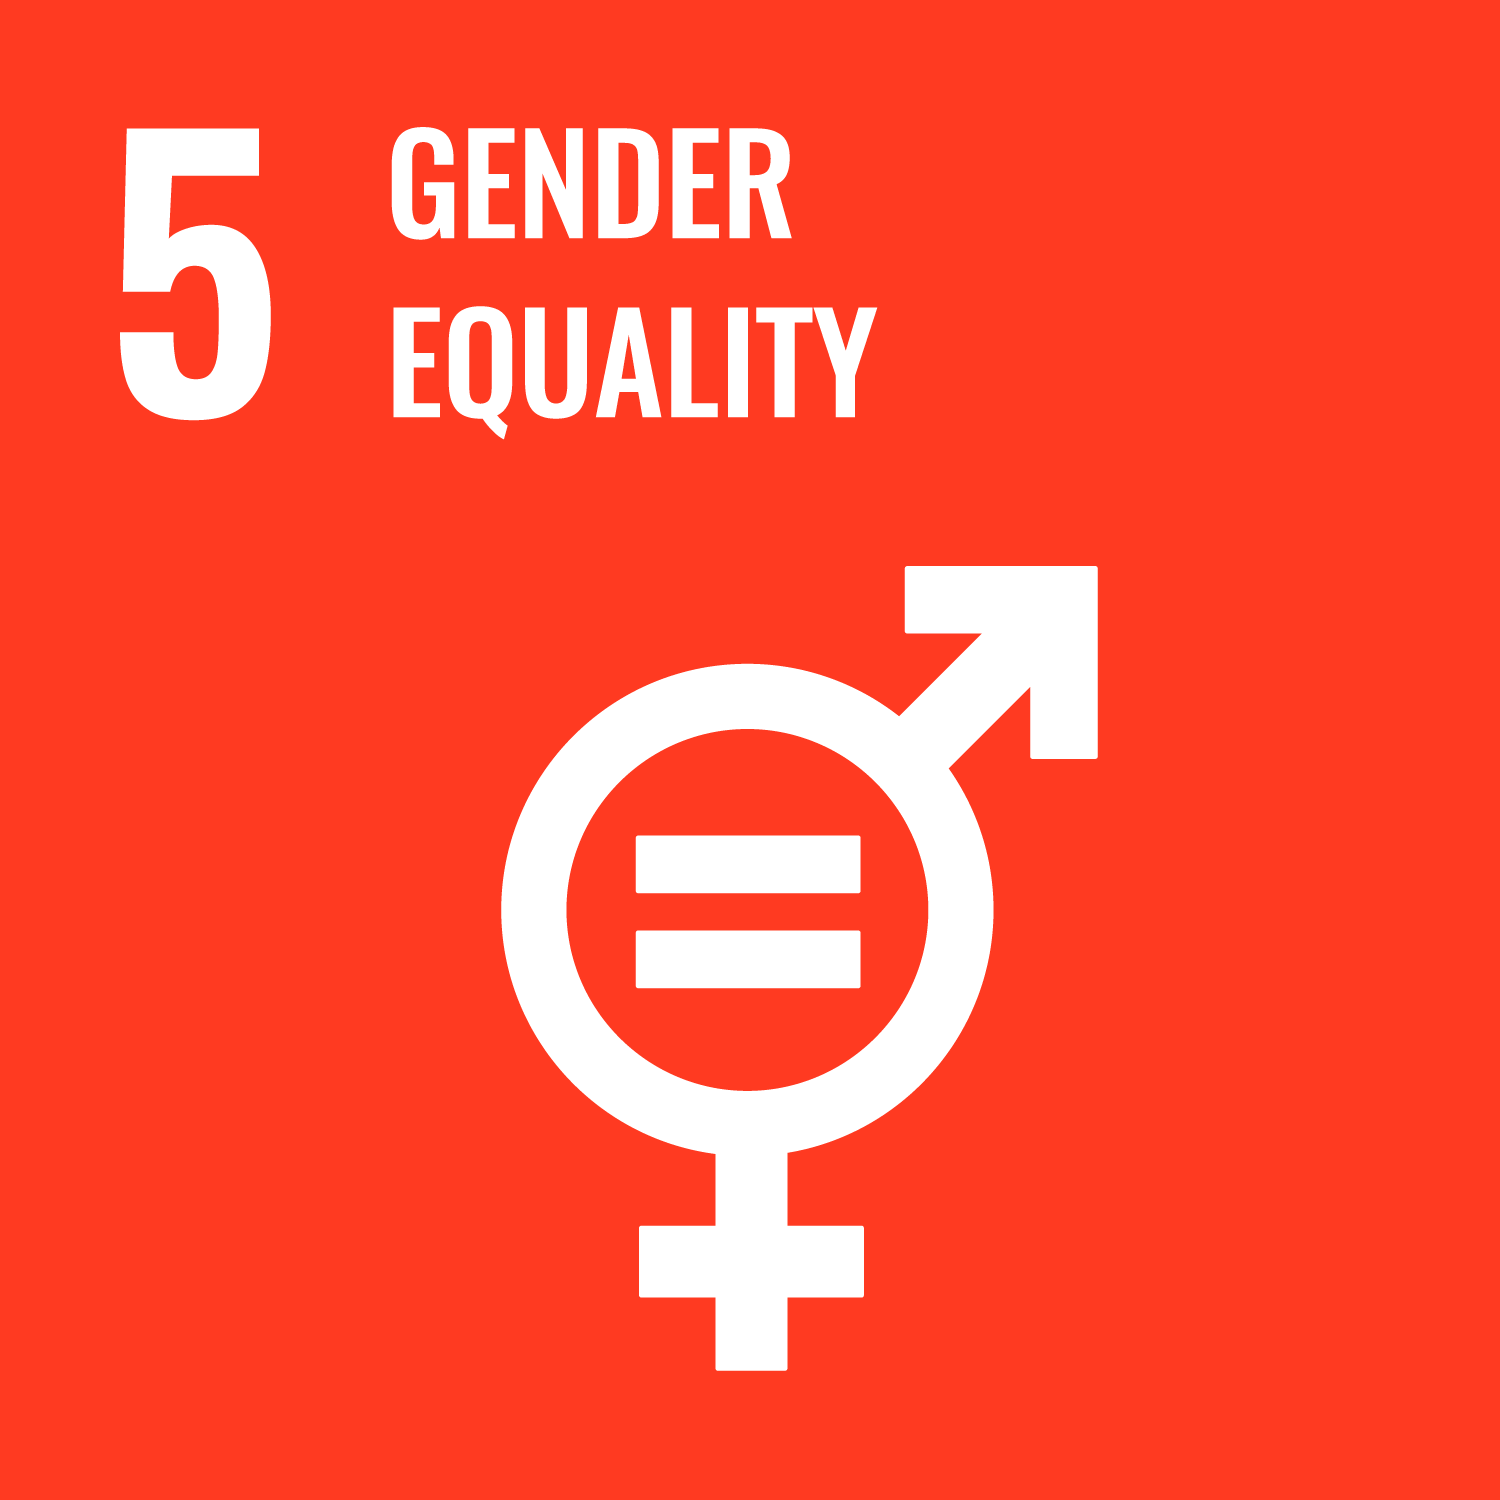 SDG5 - Gender Equality